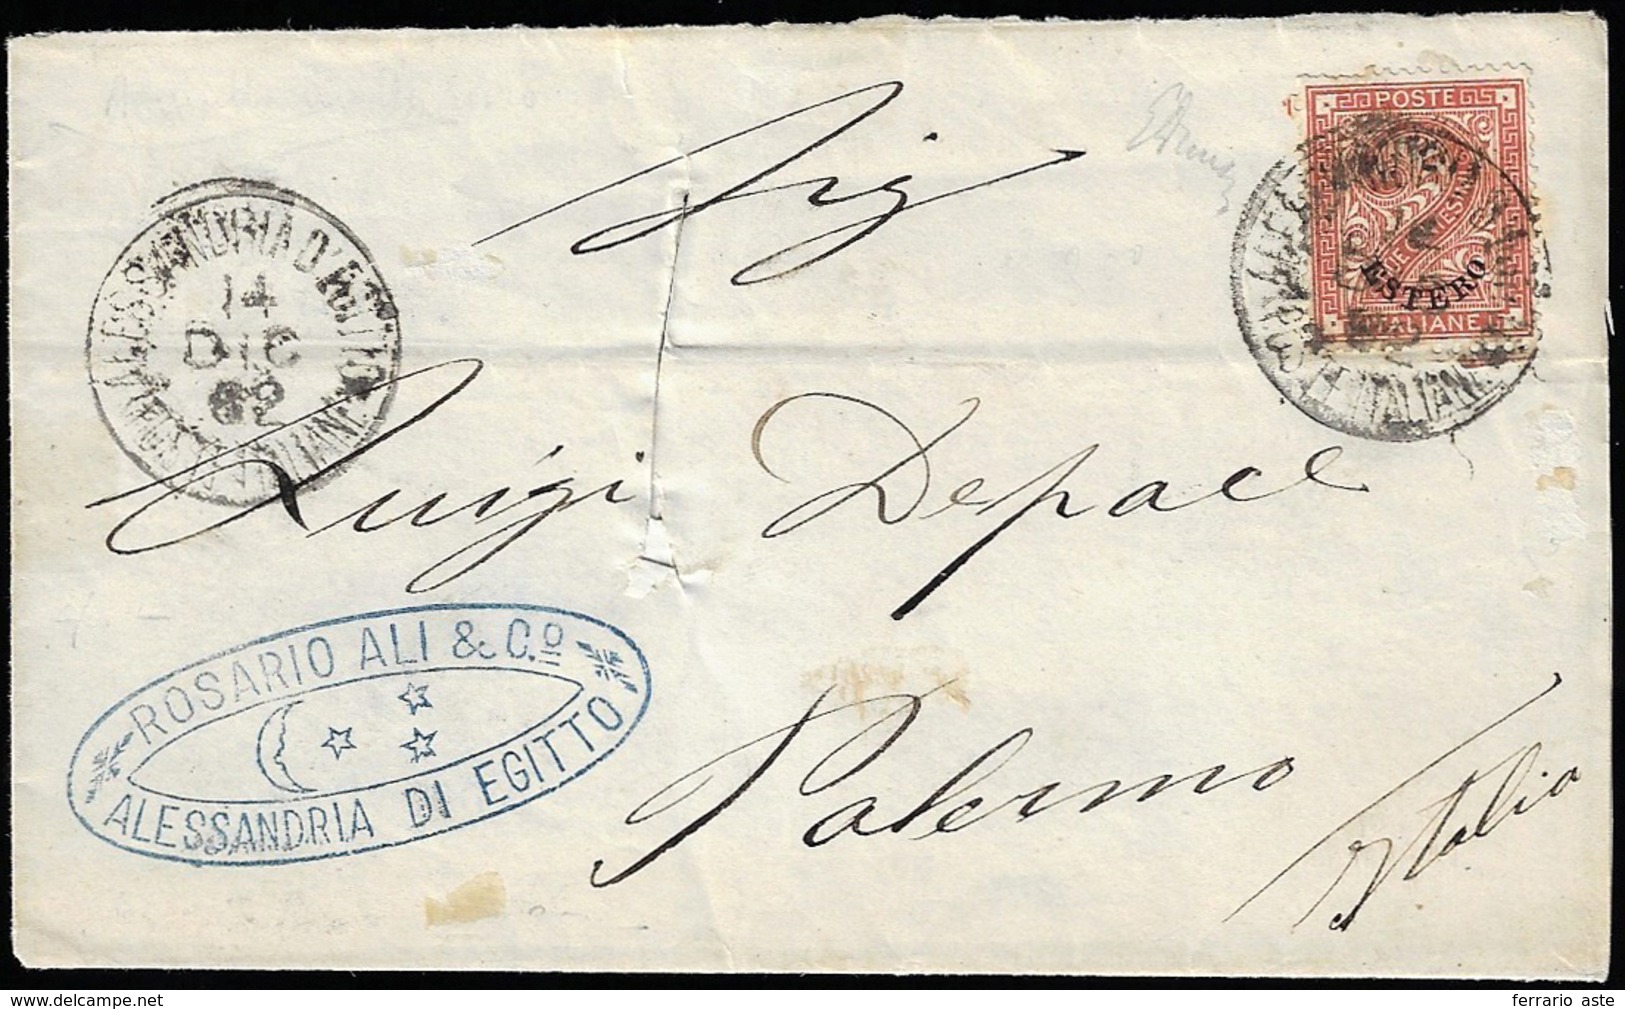 ALESSANDRIA D'EGITTO 1882 - 2 Cent. De Le Rue Soprastampato (2), Perfetto, Isolato Su Sovracoperta D... - Emisiones Generales